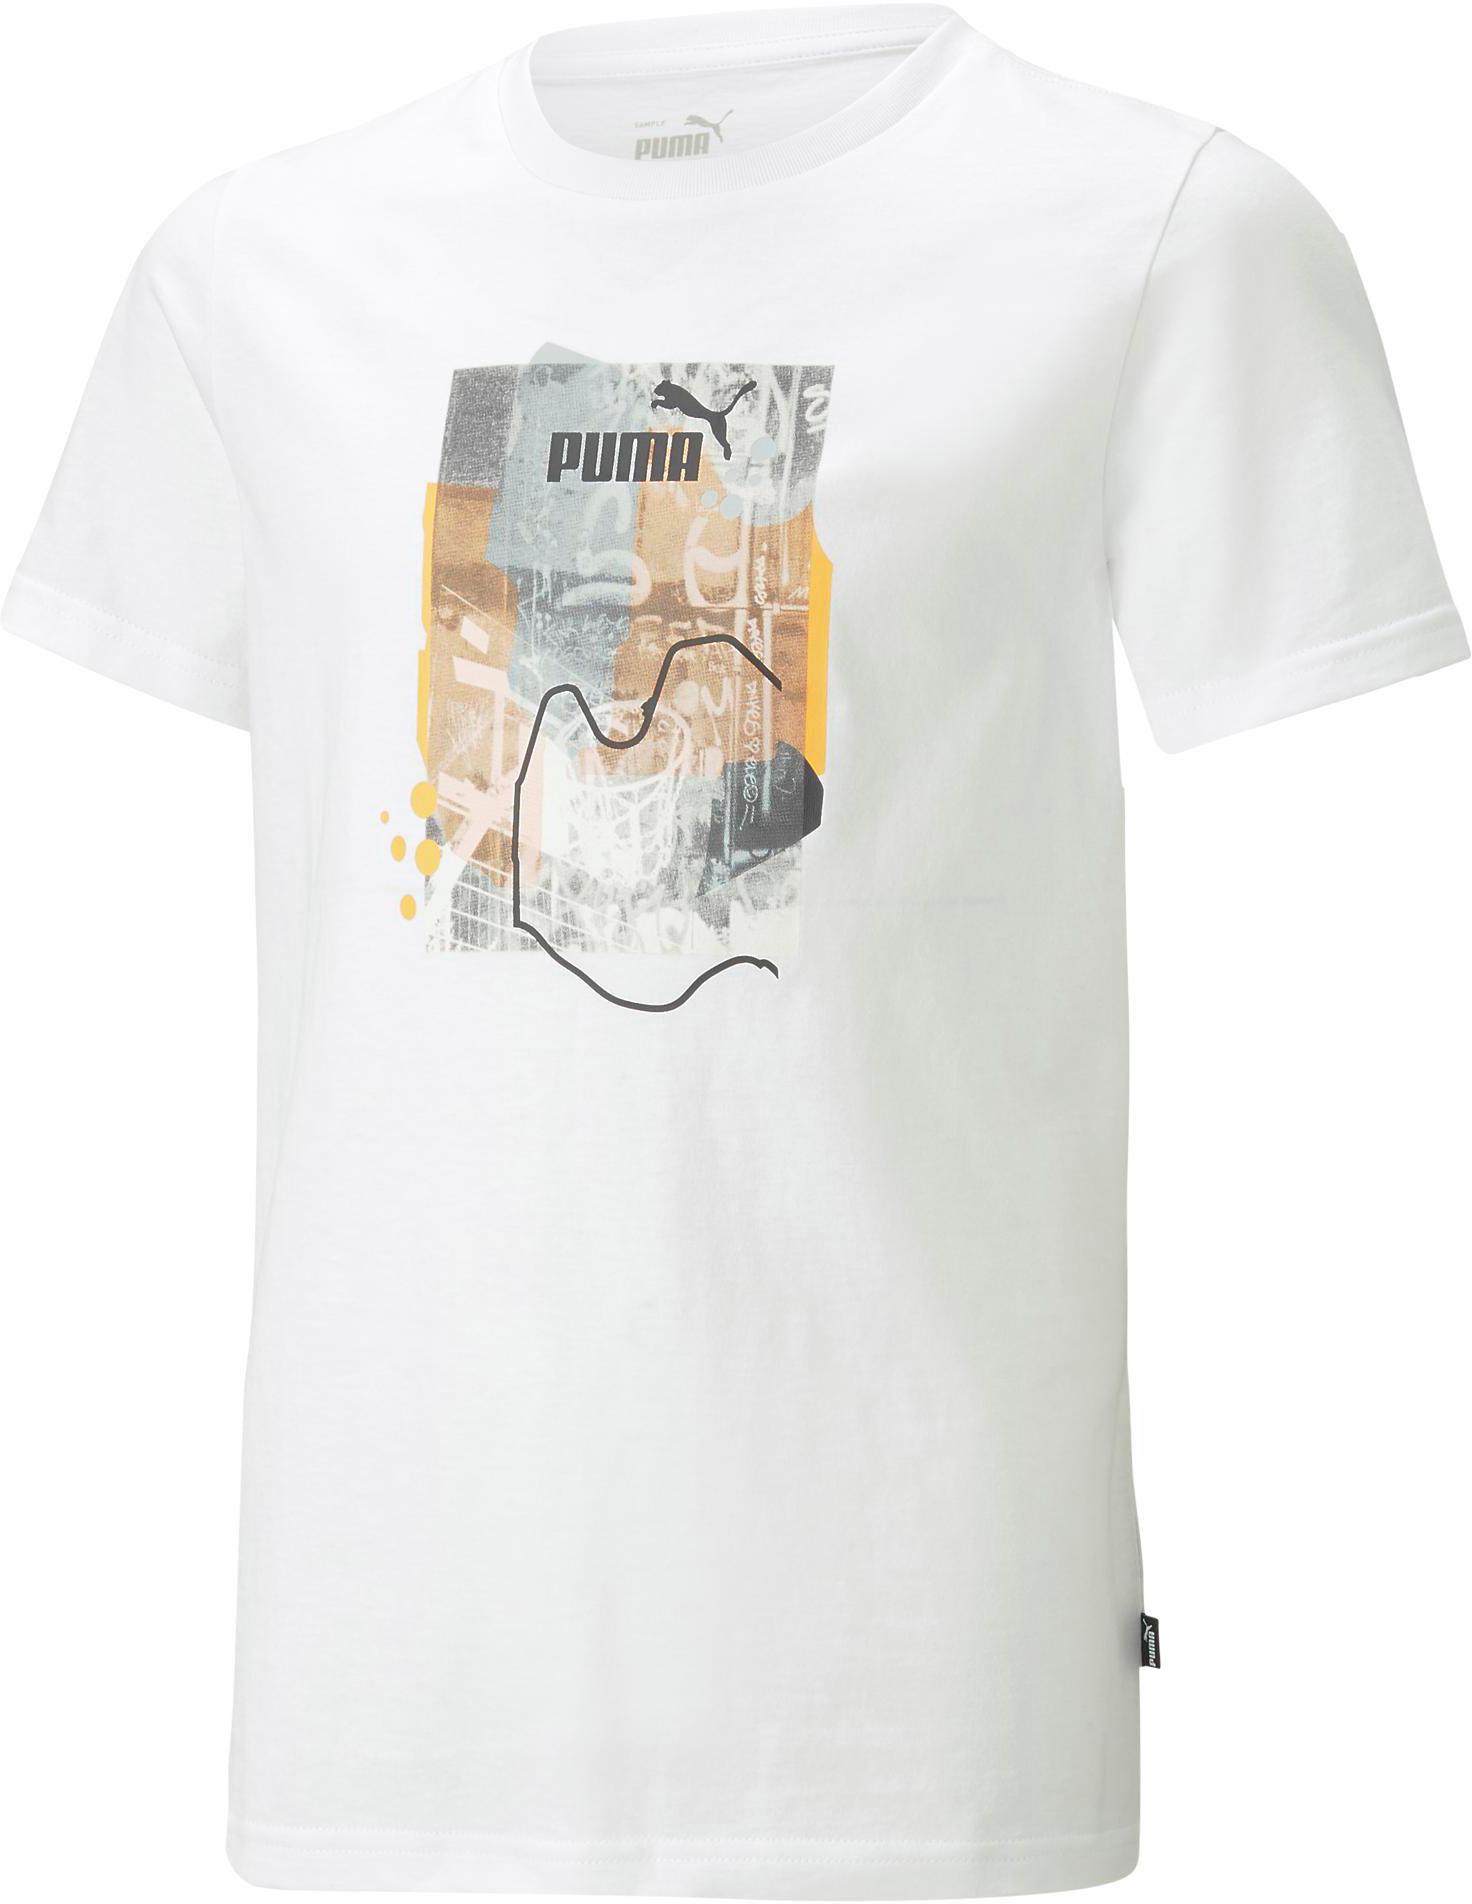 PUMA ESSENTIALS white T-Shirt Shop Jungen STREET SportScheck ART kaufen im von Online puma